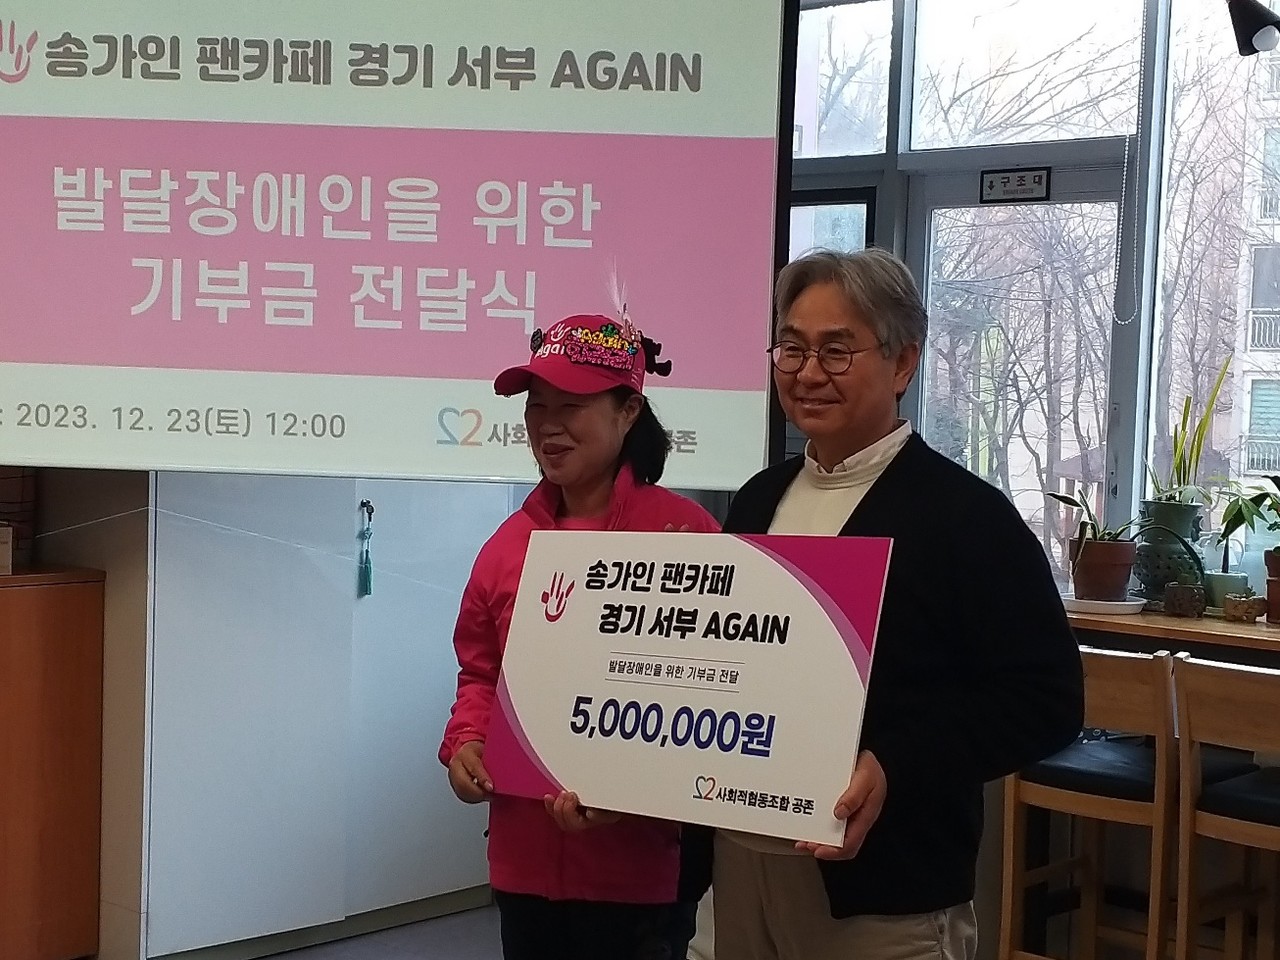 (왼쪽부터) 송가인 팬카페 어게인 힐러리 지역장과 공존 임성현 이사장